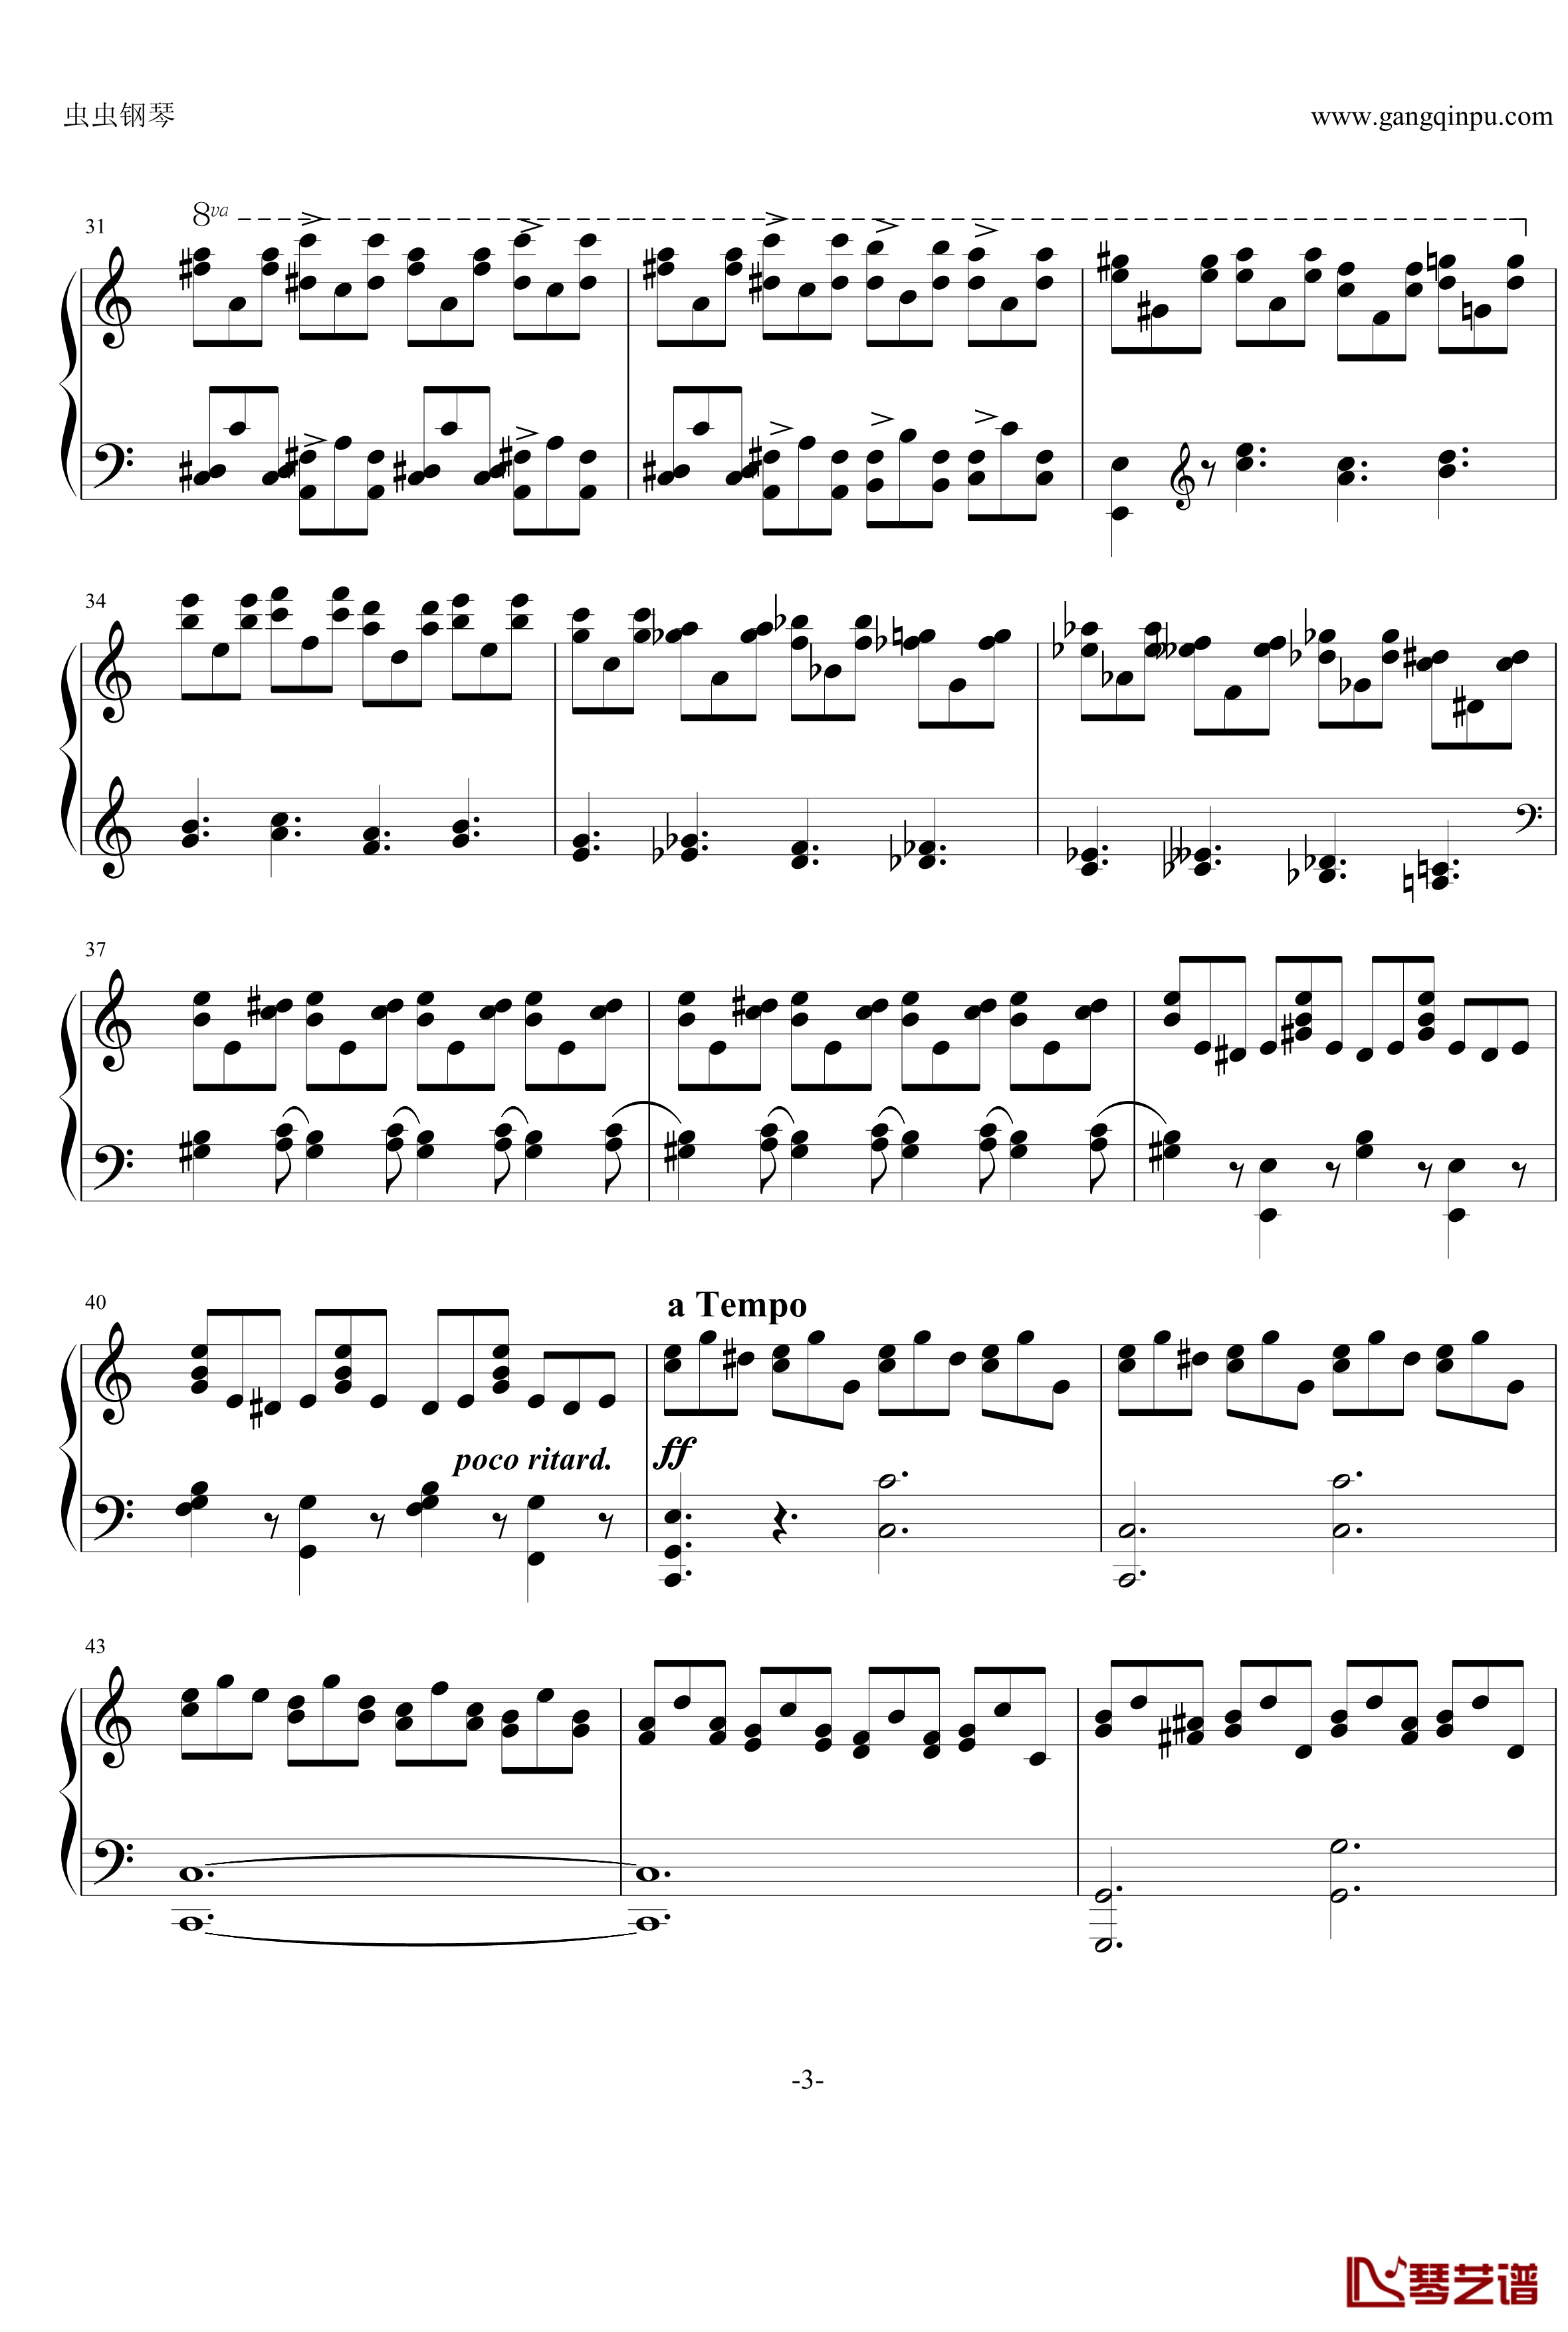 巧技练习曲钢琴谱-莫什科夫斯基-Moszkowski3